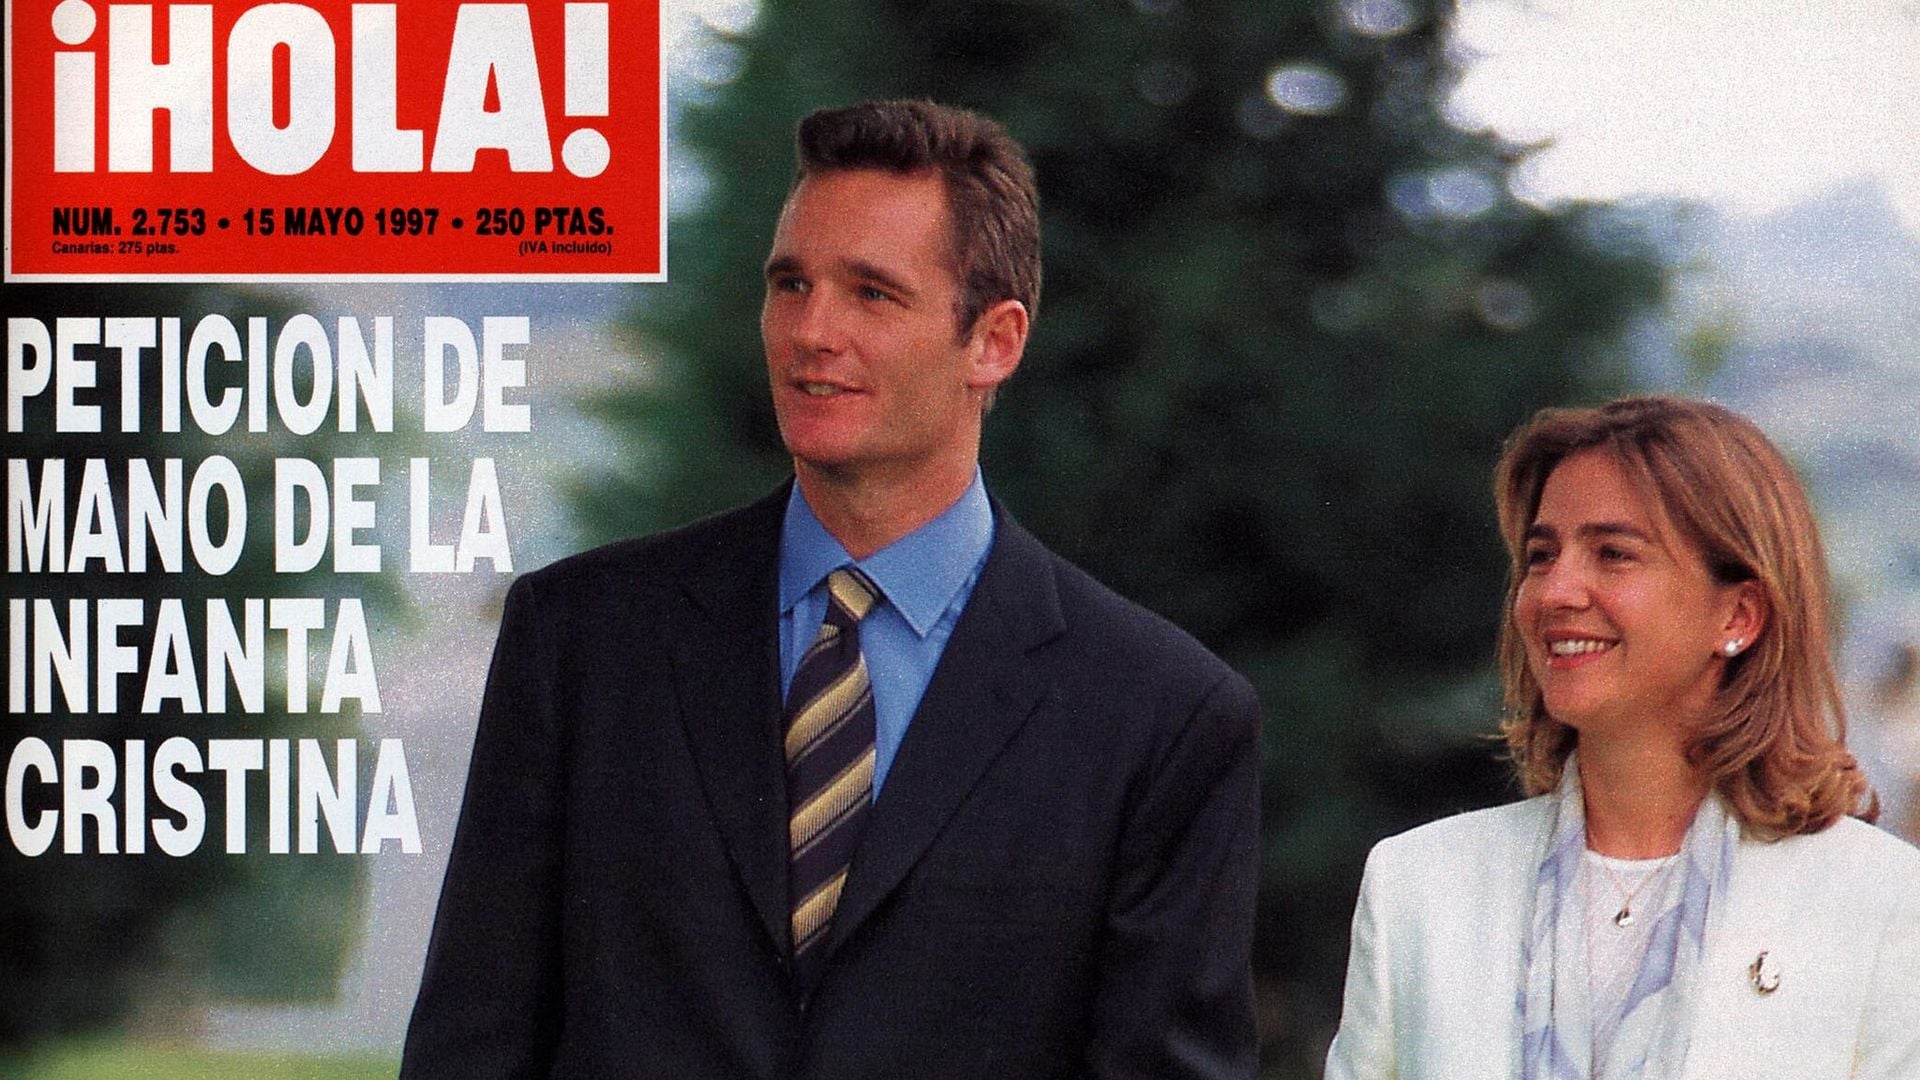 25 aniversario del compromiso de Doña Cristina e Iñaki Urdangarin: Así contó ¡HOLA! la pedida de mano de la Infanta y el jugador de balonmano